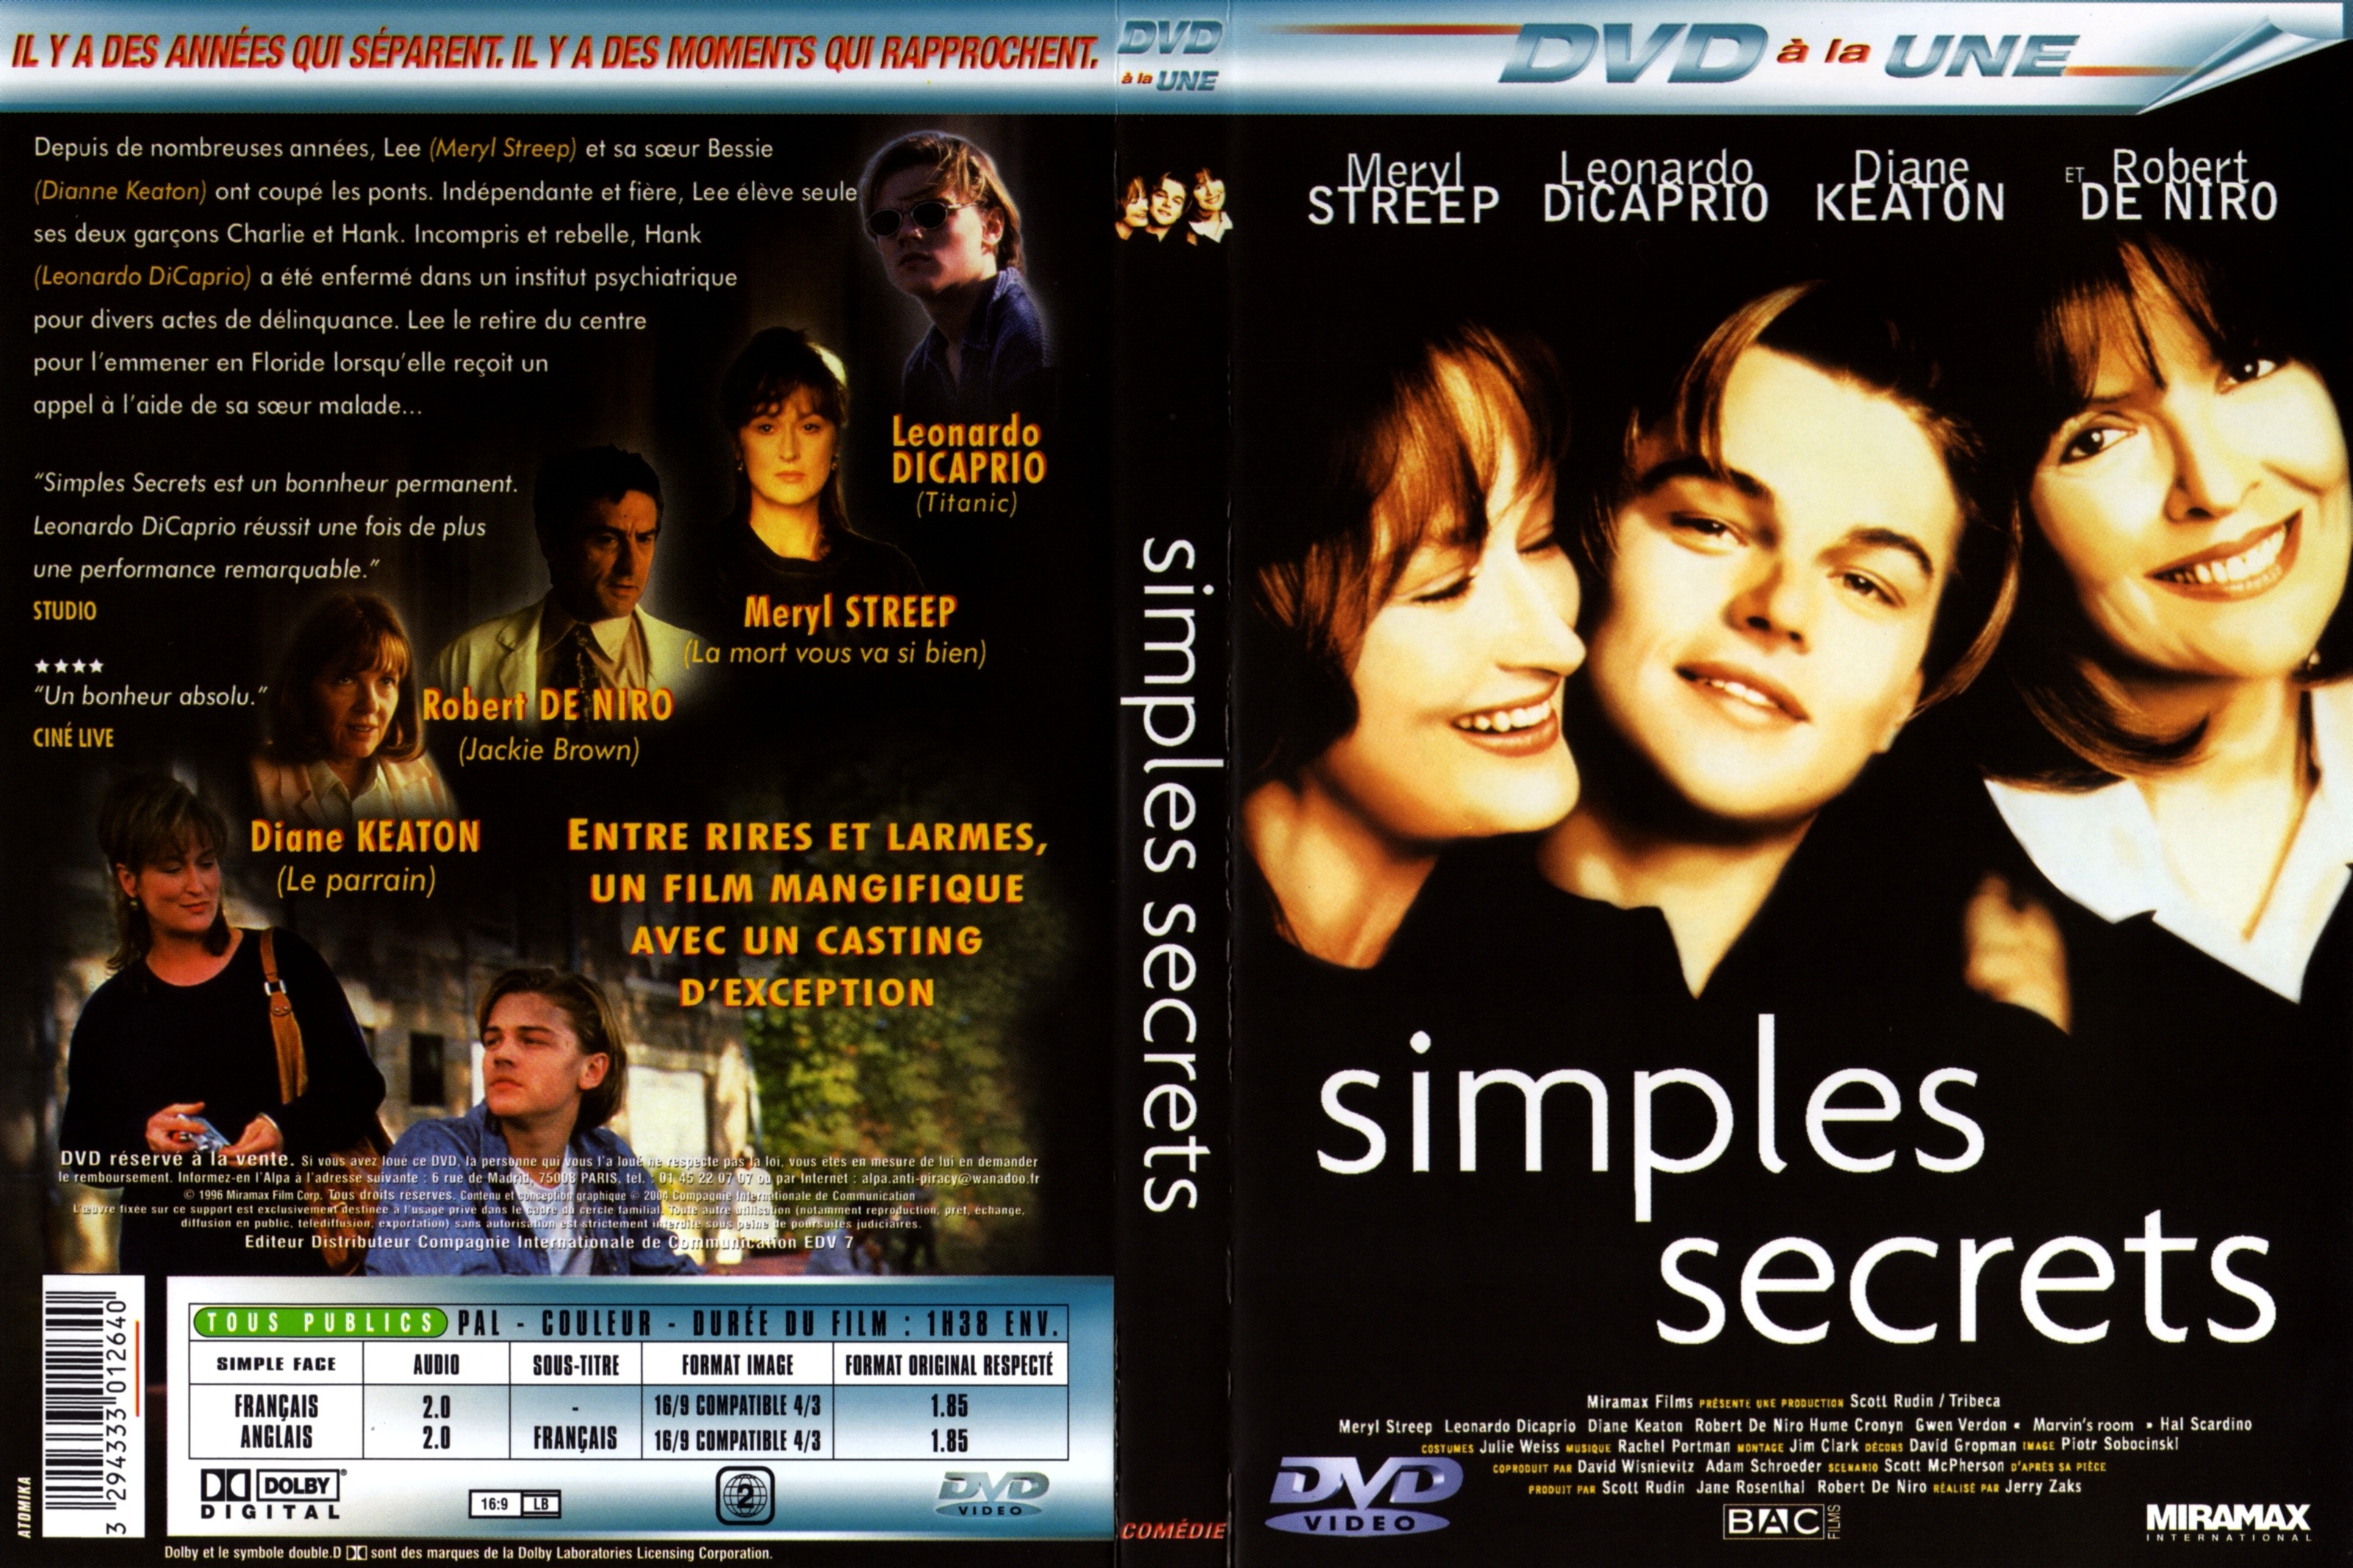 Jaquette DVD Simples secrets v2